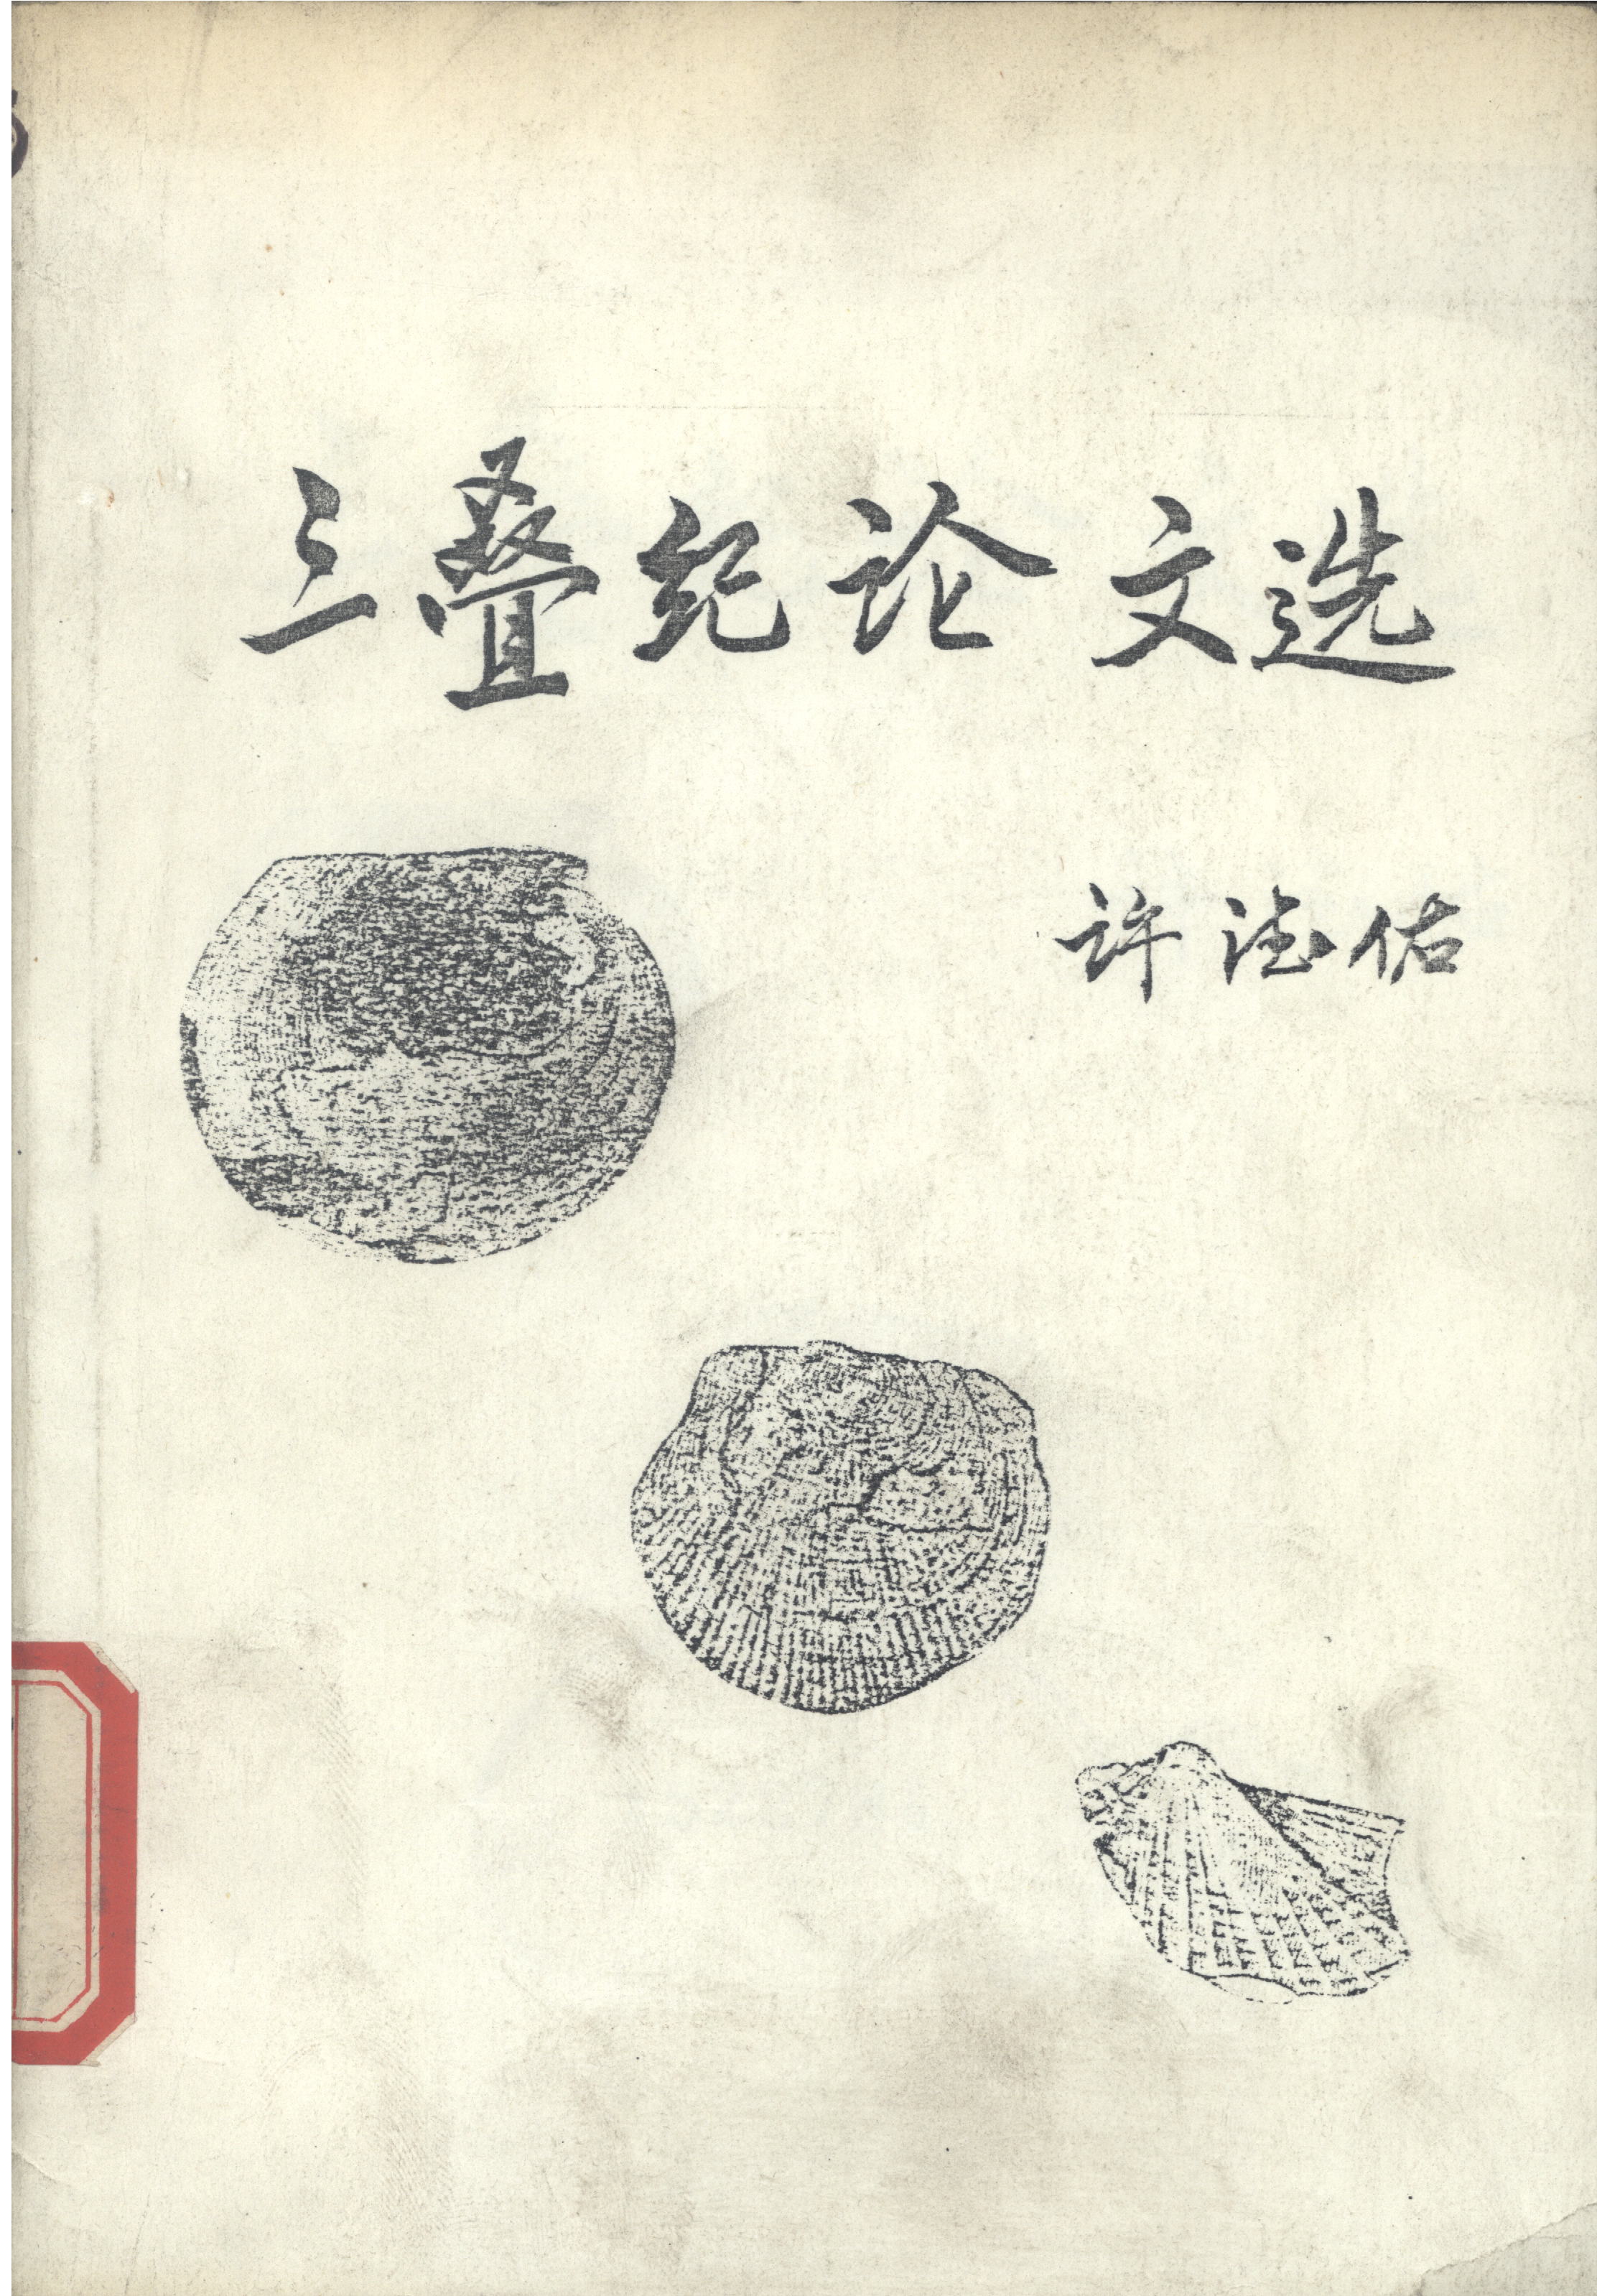 此書藏於北京師範大學圖書館（非公開發行）